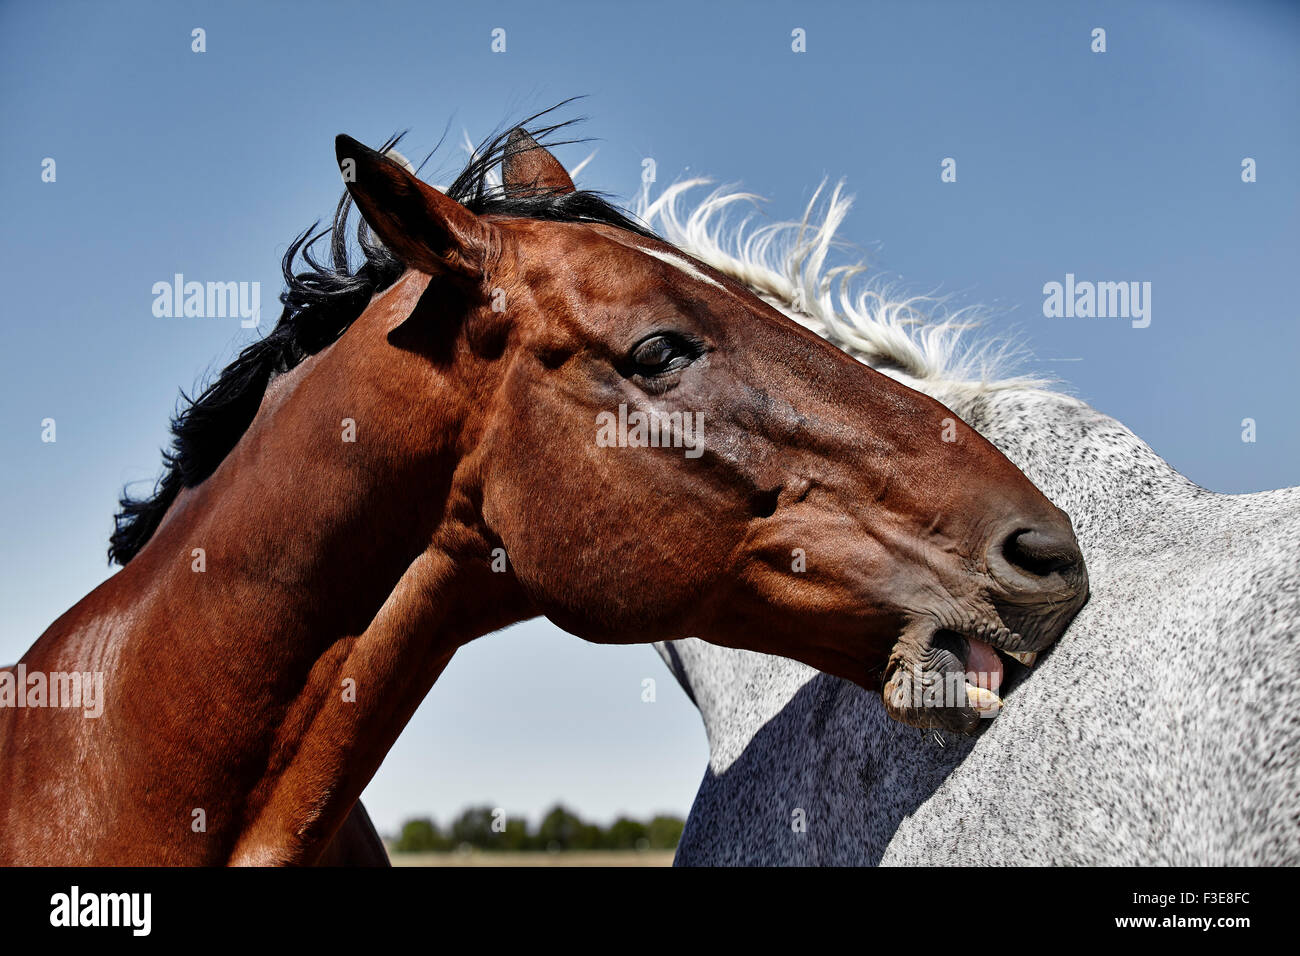 Cheval de couleur baie aux puces toilettage et mordu de couleur grise, avec des dents de cheval Banque D'Images